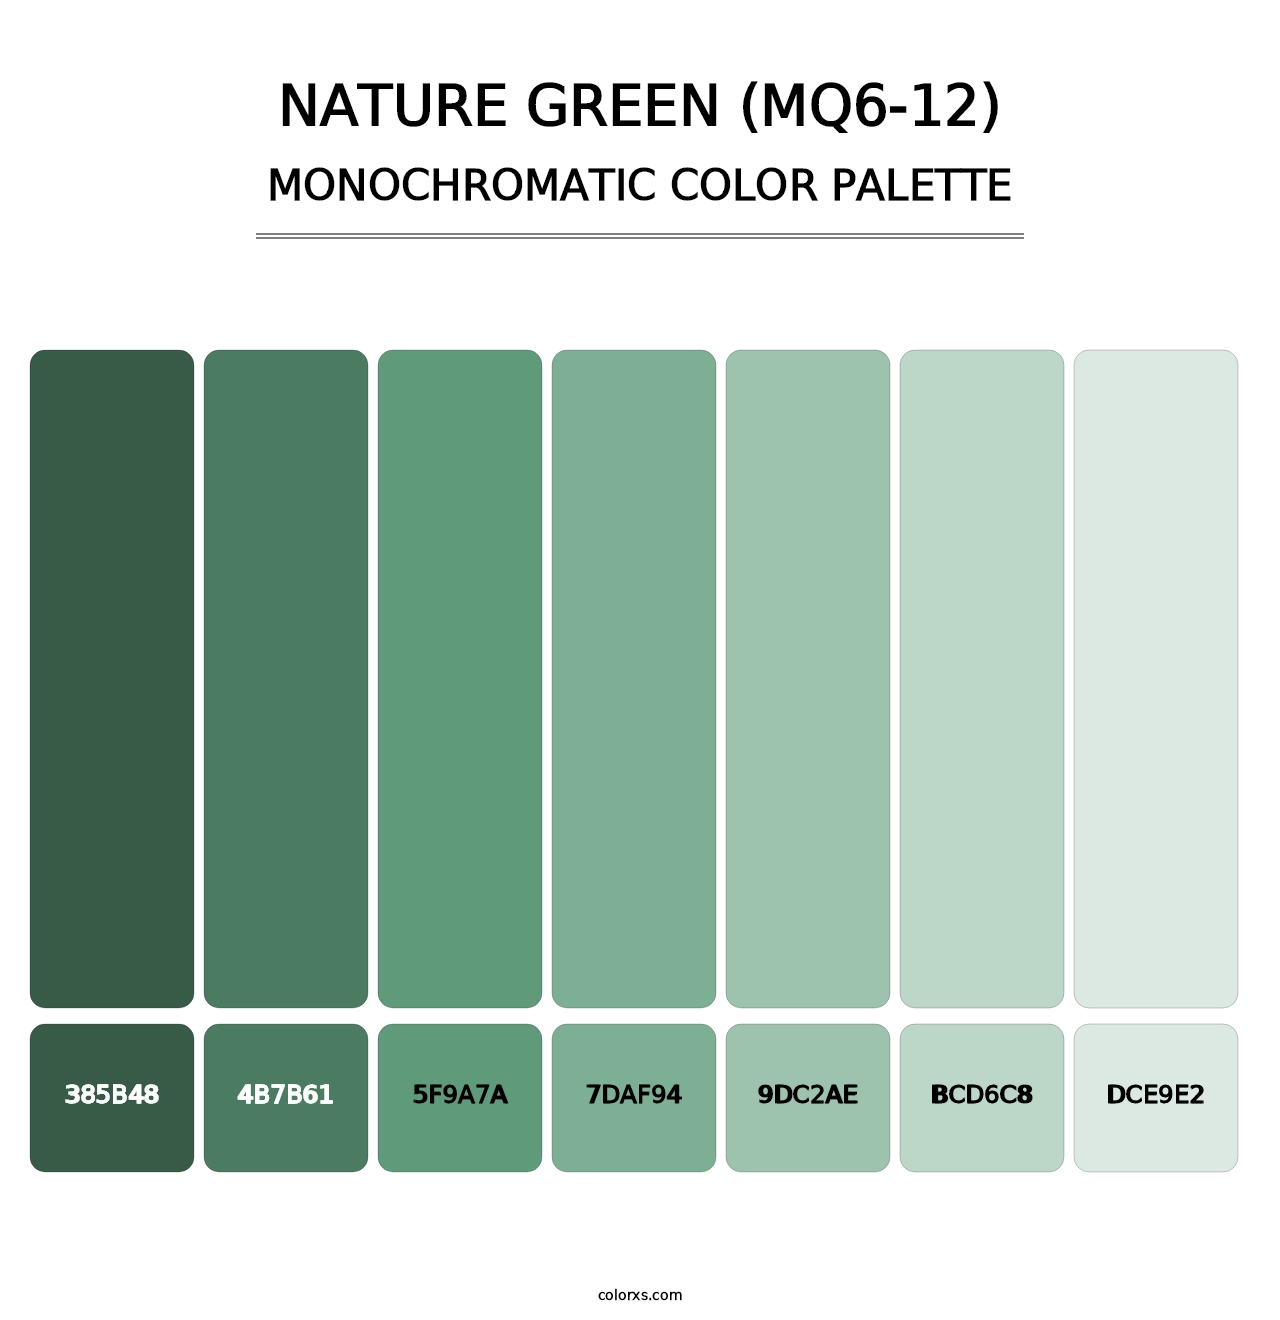 Nature Green (MQ6-12) - Monochromatic Color Palette